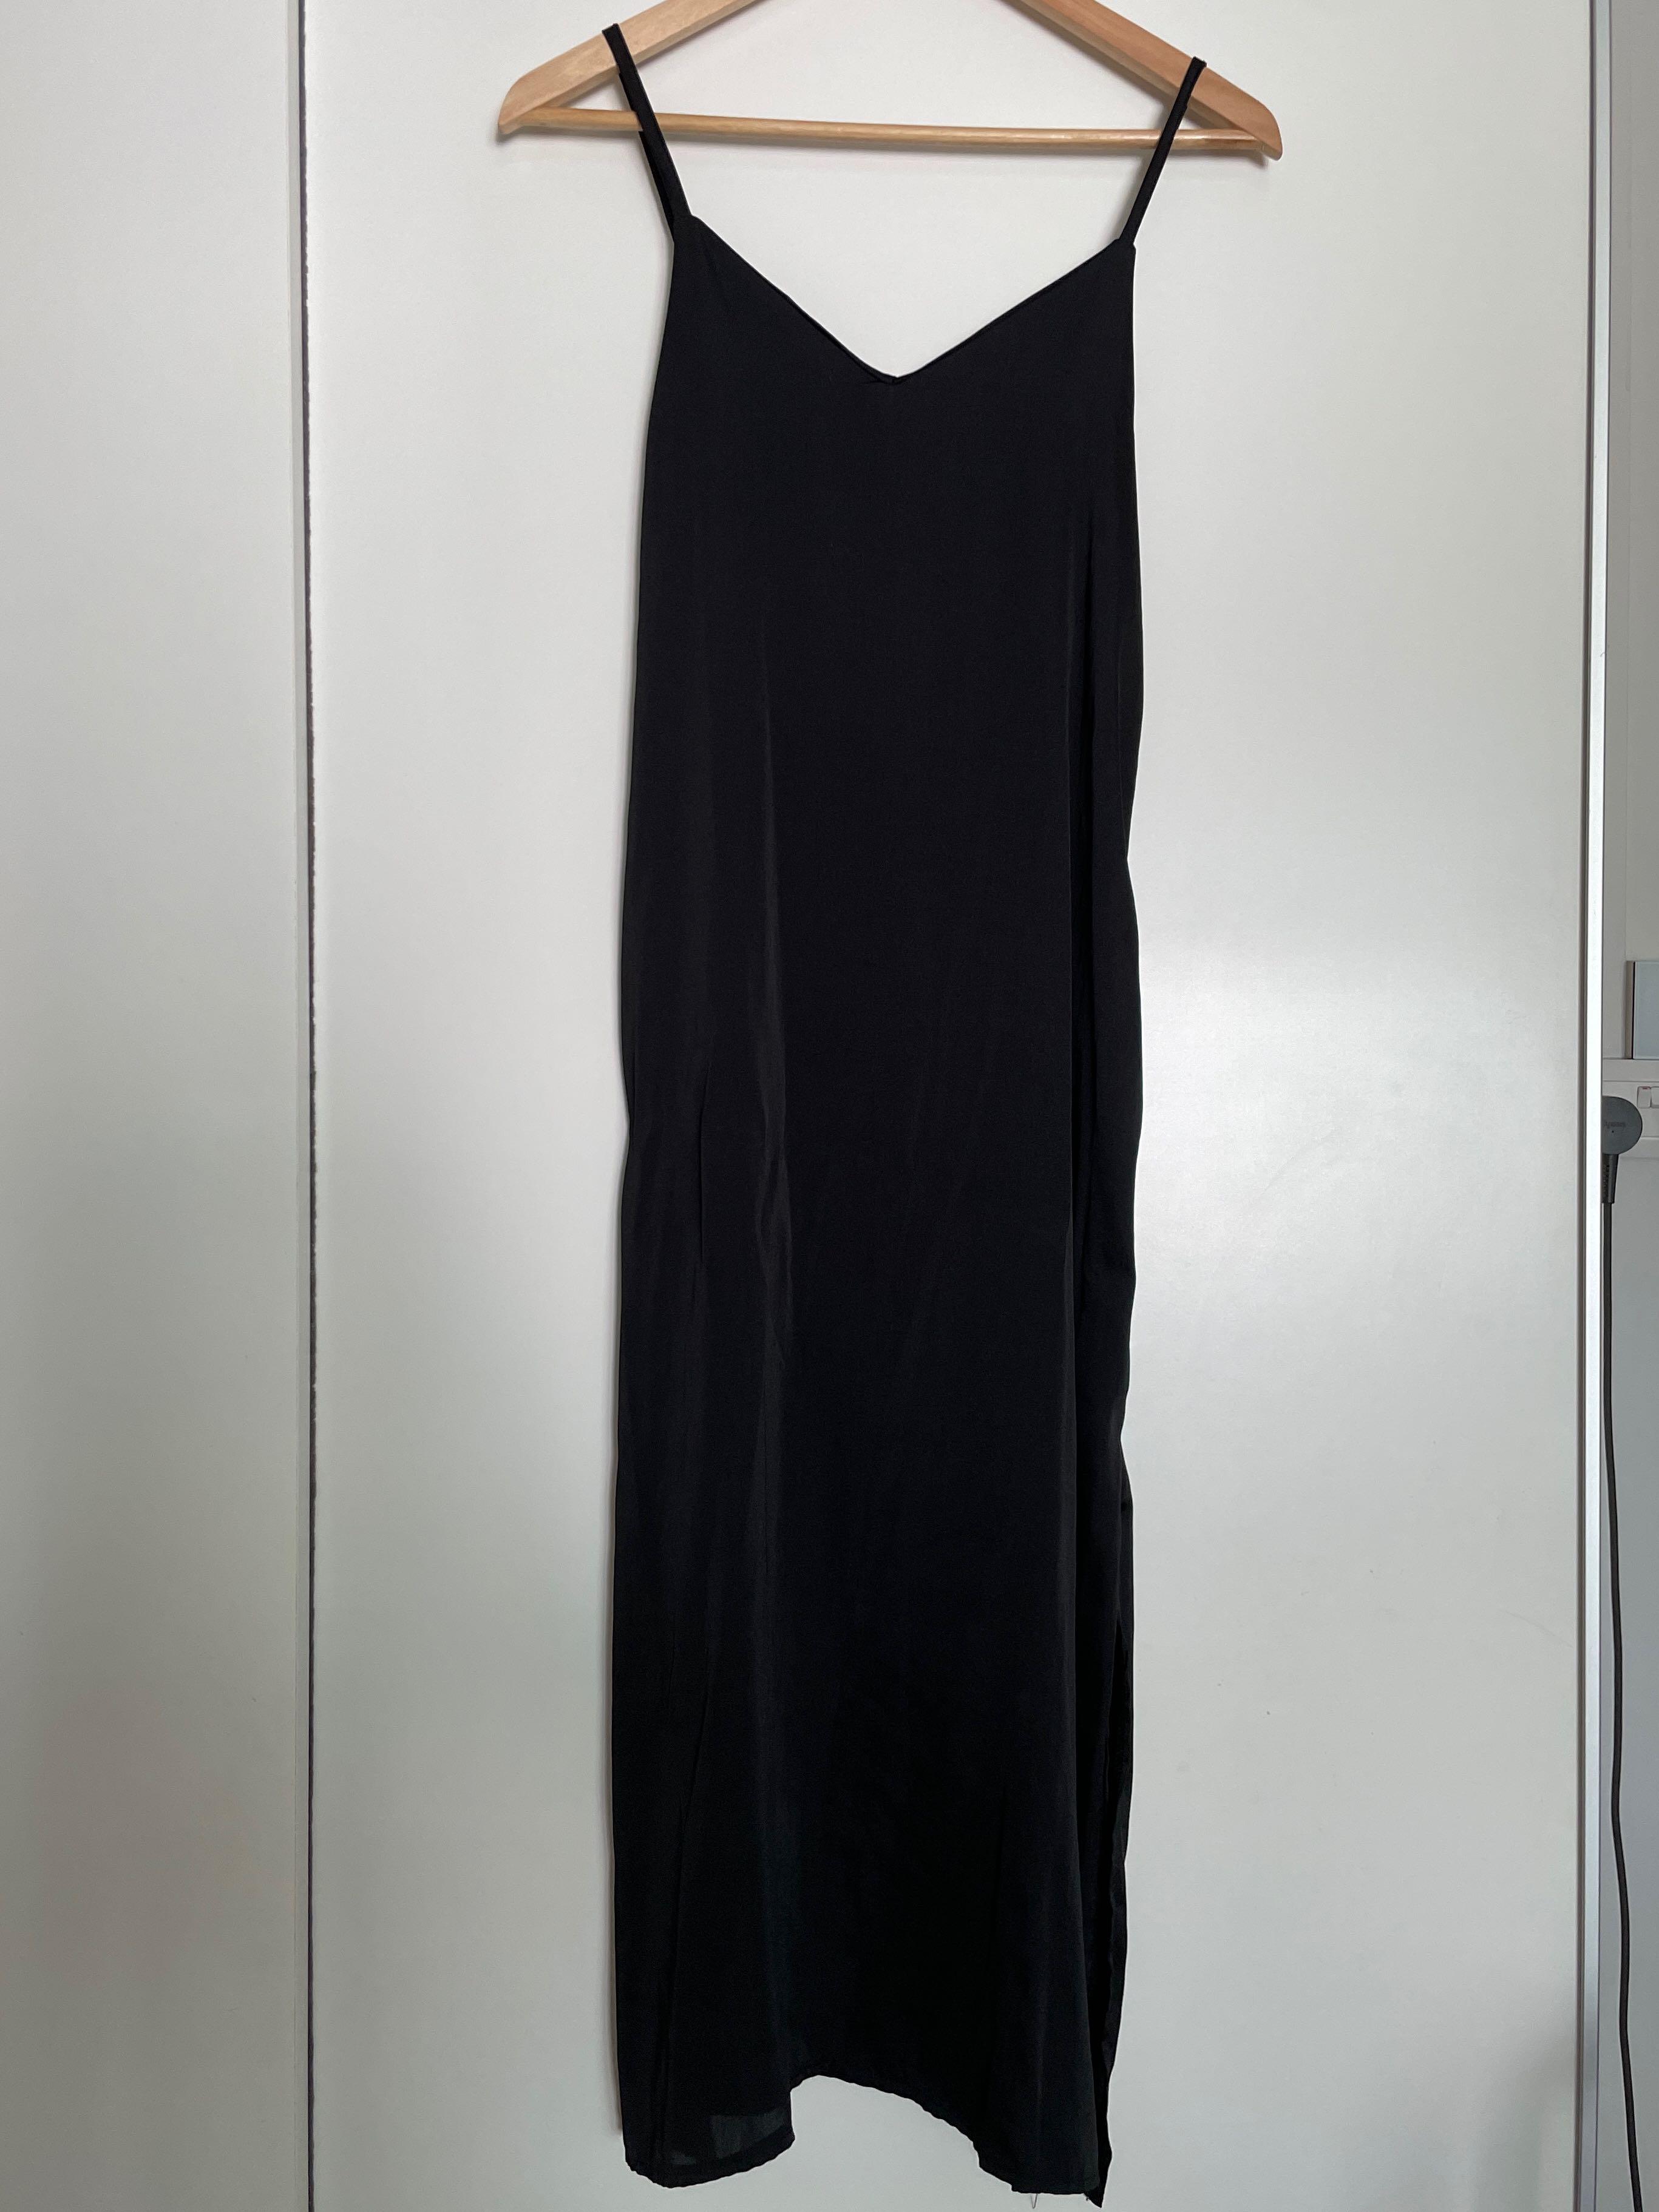 Stylenanda black satin dress, Women's Fashion, Dresses & Sets, Dresses ...